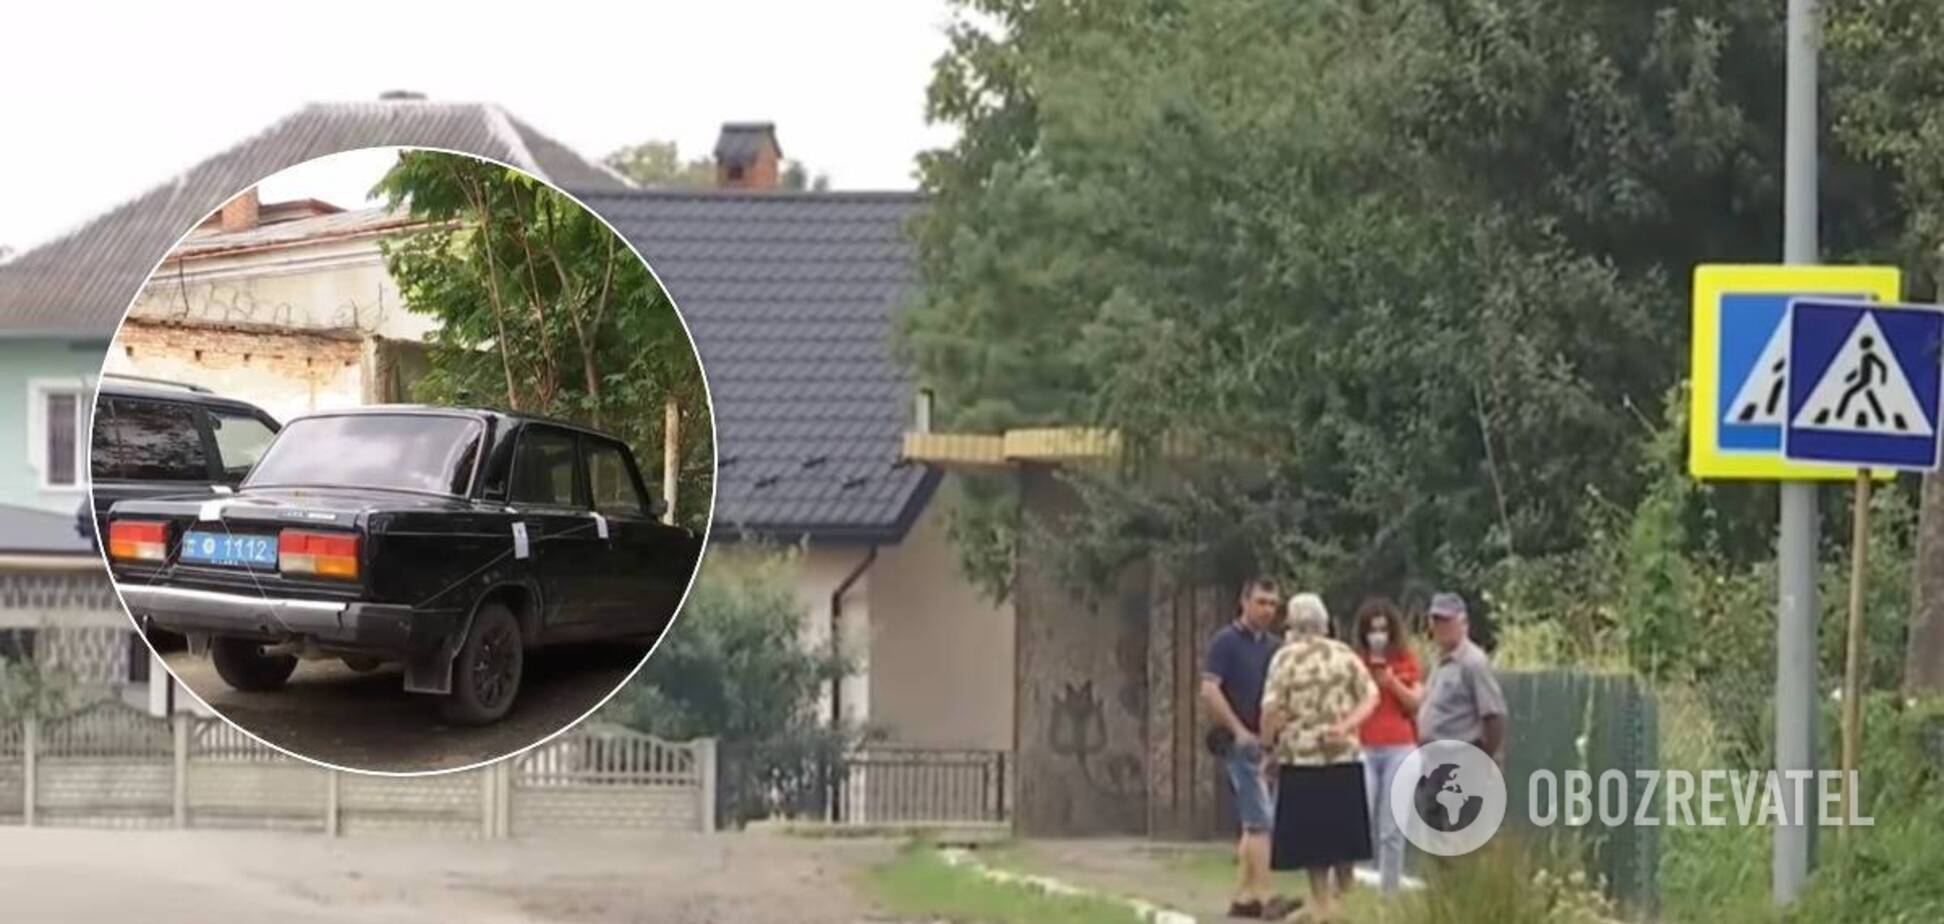 На Львовщине полицейский сбил пешехода и скрылся: подробности жуткого ДТП